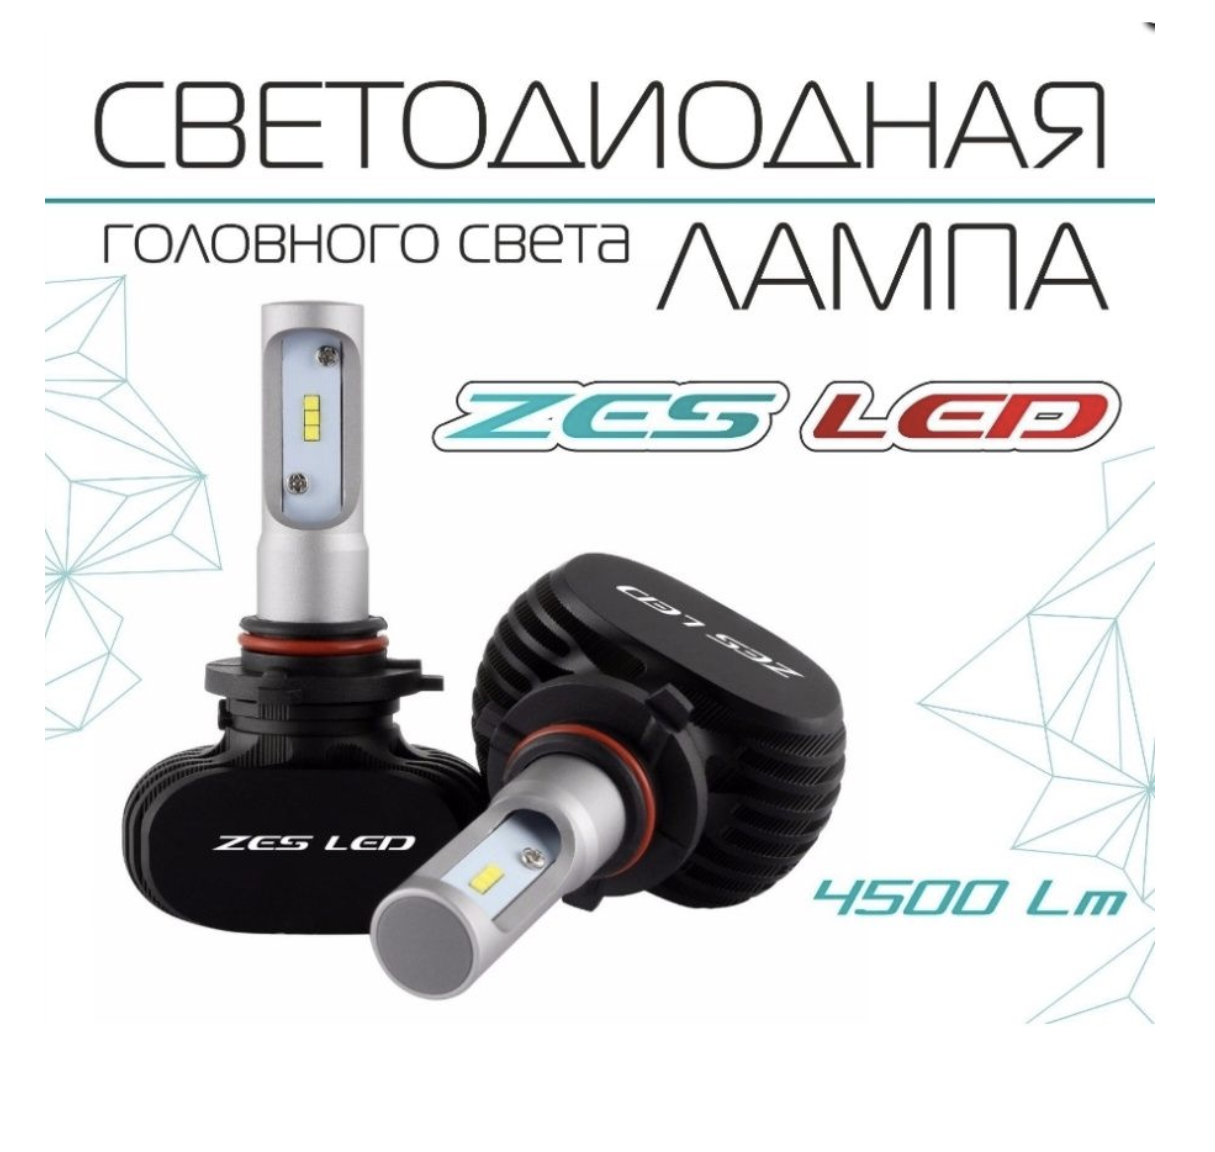 Светодиодная лампа Viper H3 ZES LED 4500lm (радиатор) - фото